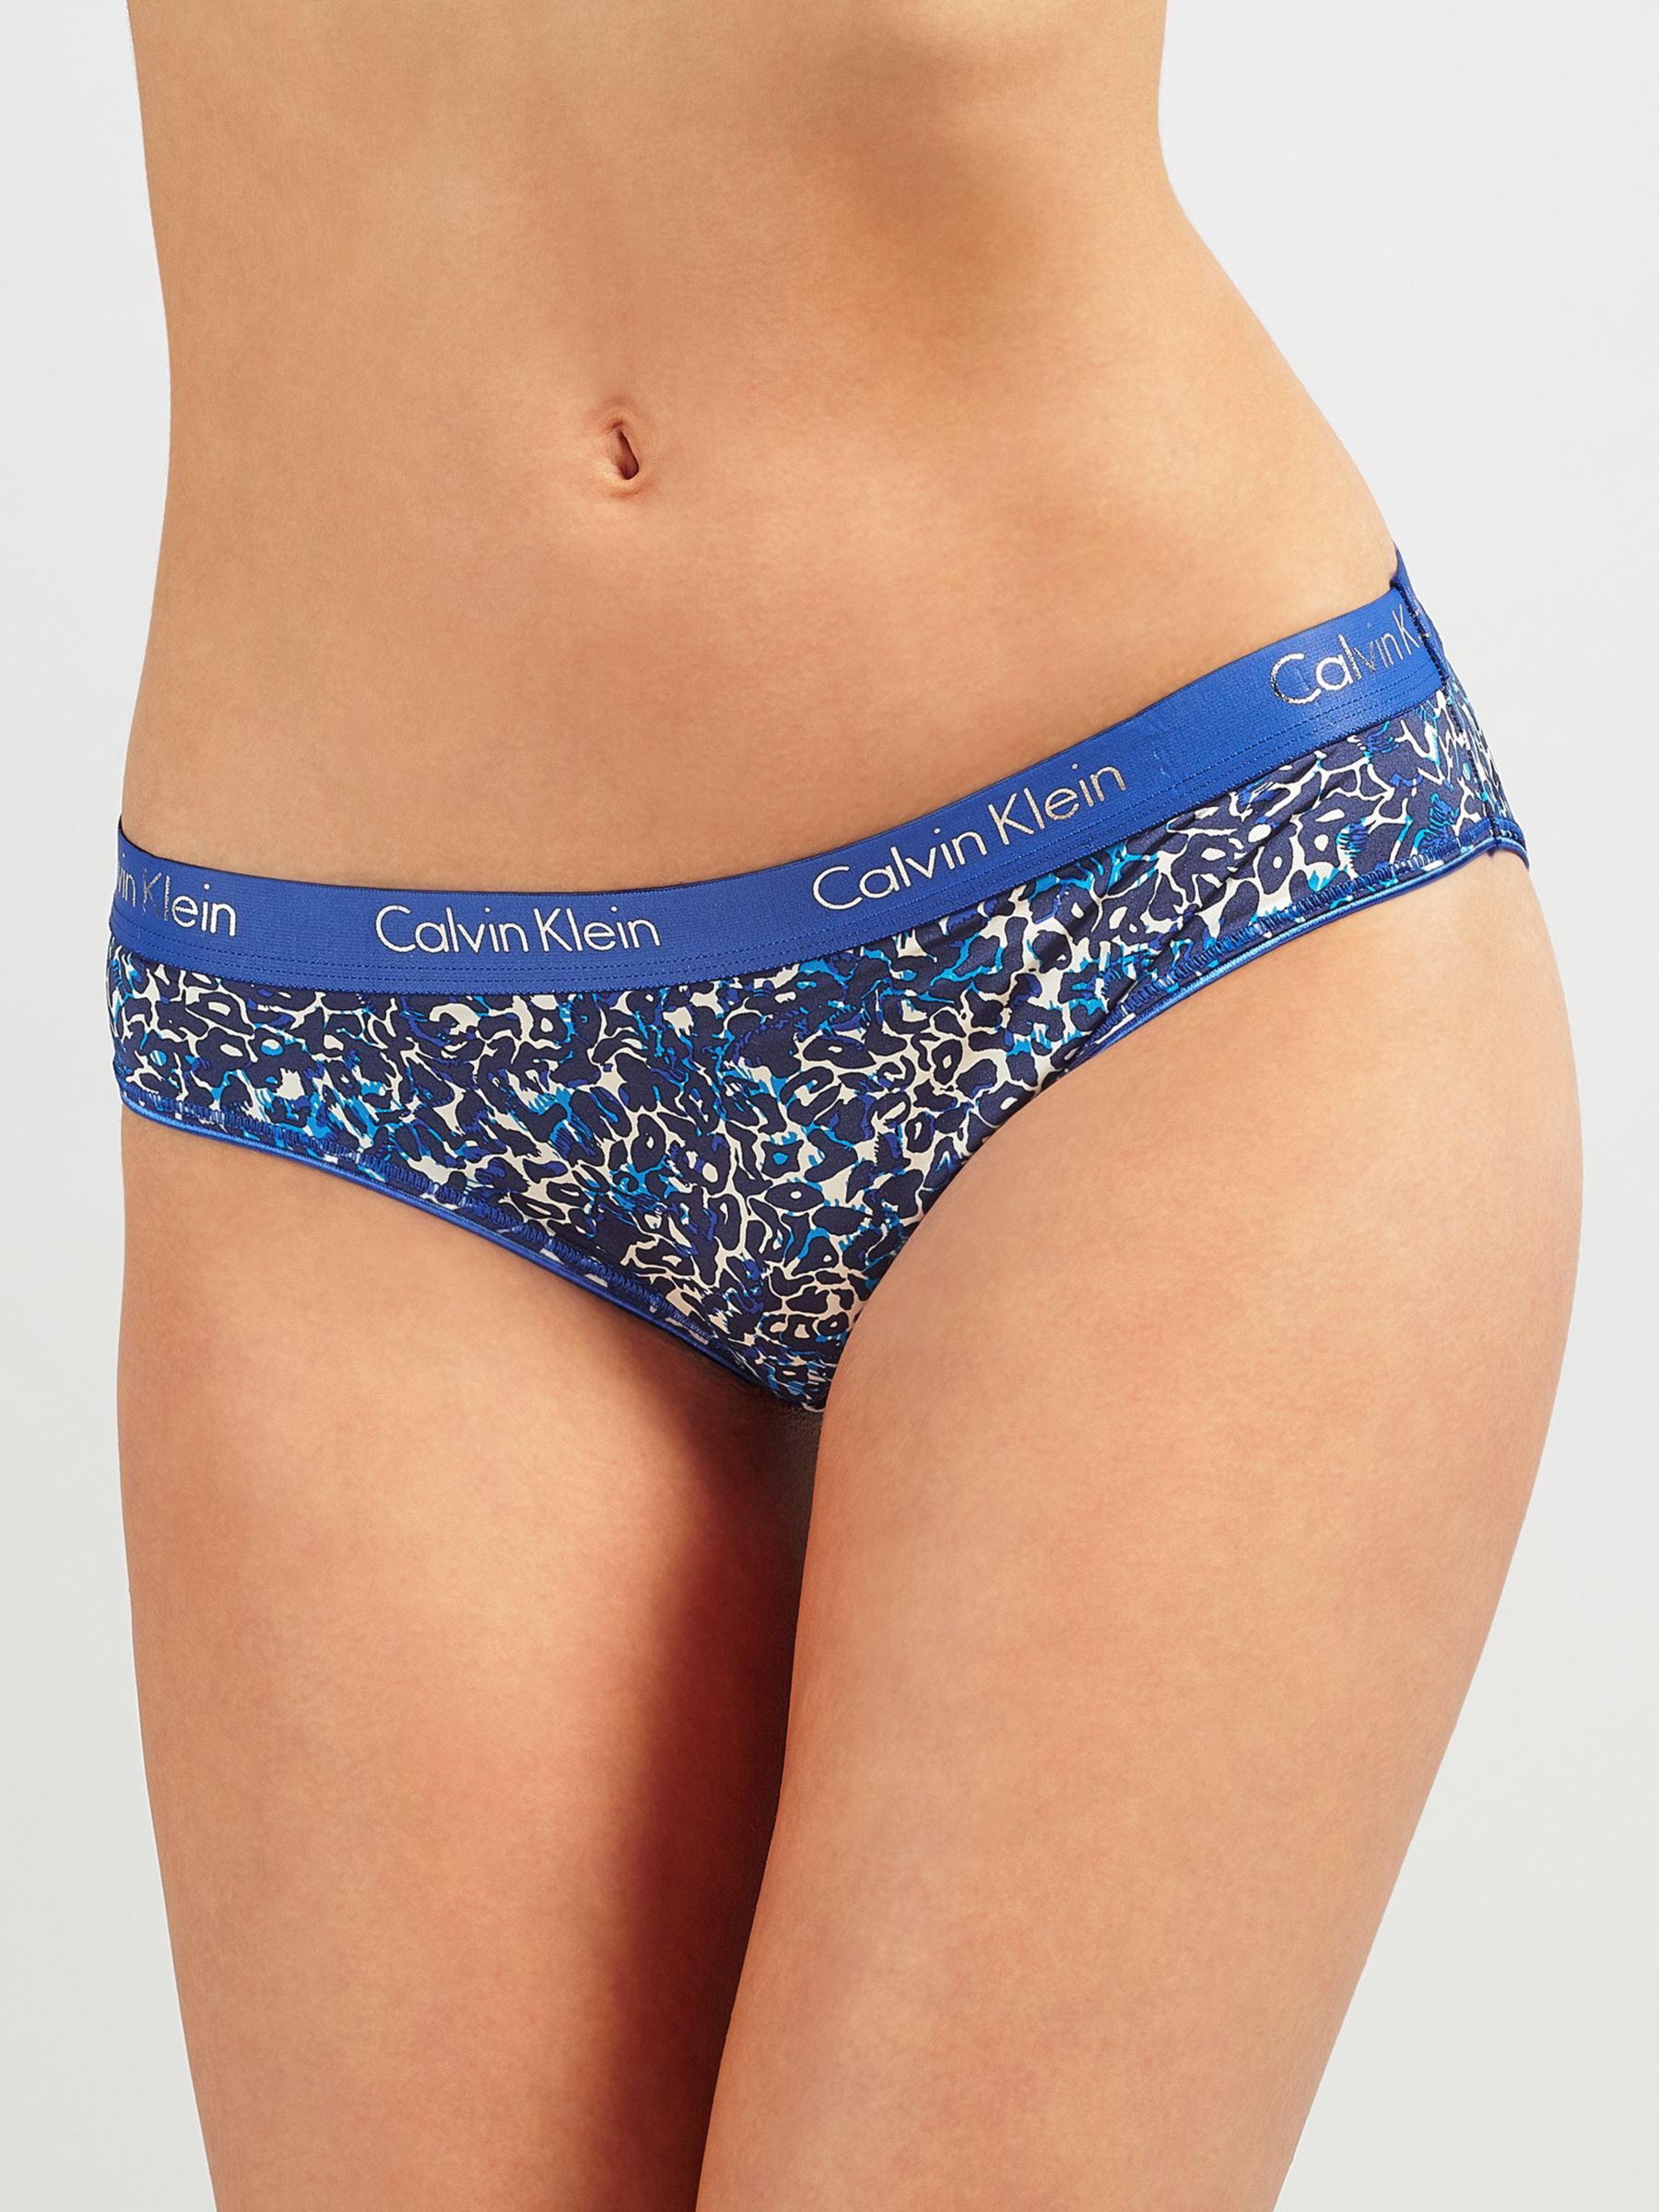 calvin klein leopard print underwear